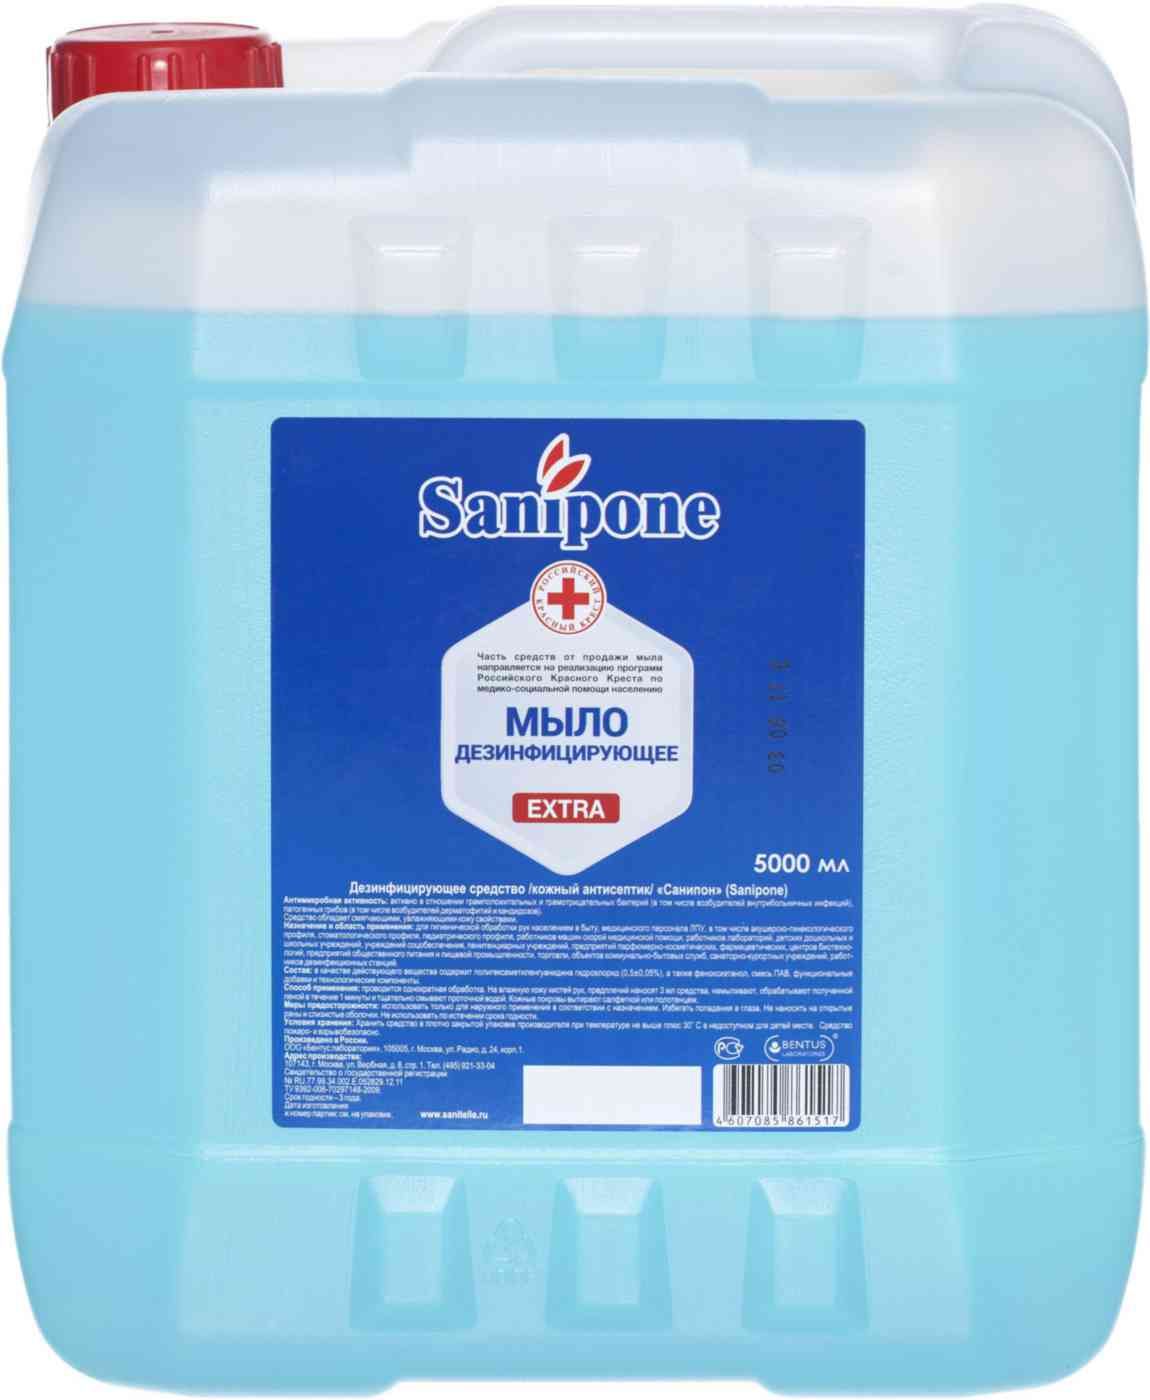 Антисептическое мытье. SANIPONE мыло дезинфицирующее. Жидкое мыло SANIPONE Extra. Мыло жидкое дезинфицирующее, SANIPONE "Extra". Мыло жидкое антибактериальное SANIPONE.